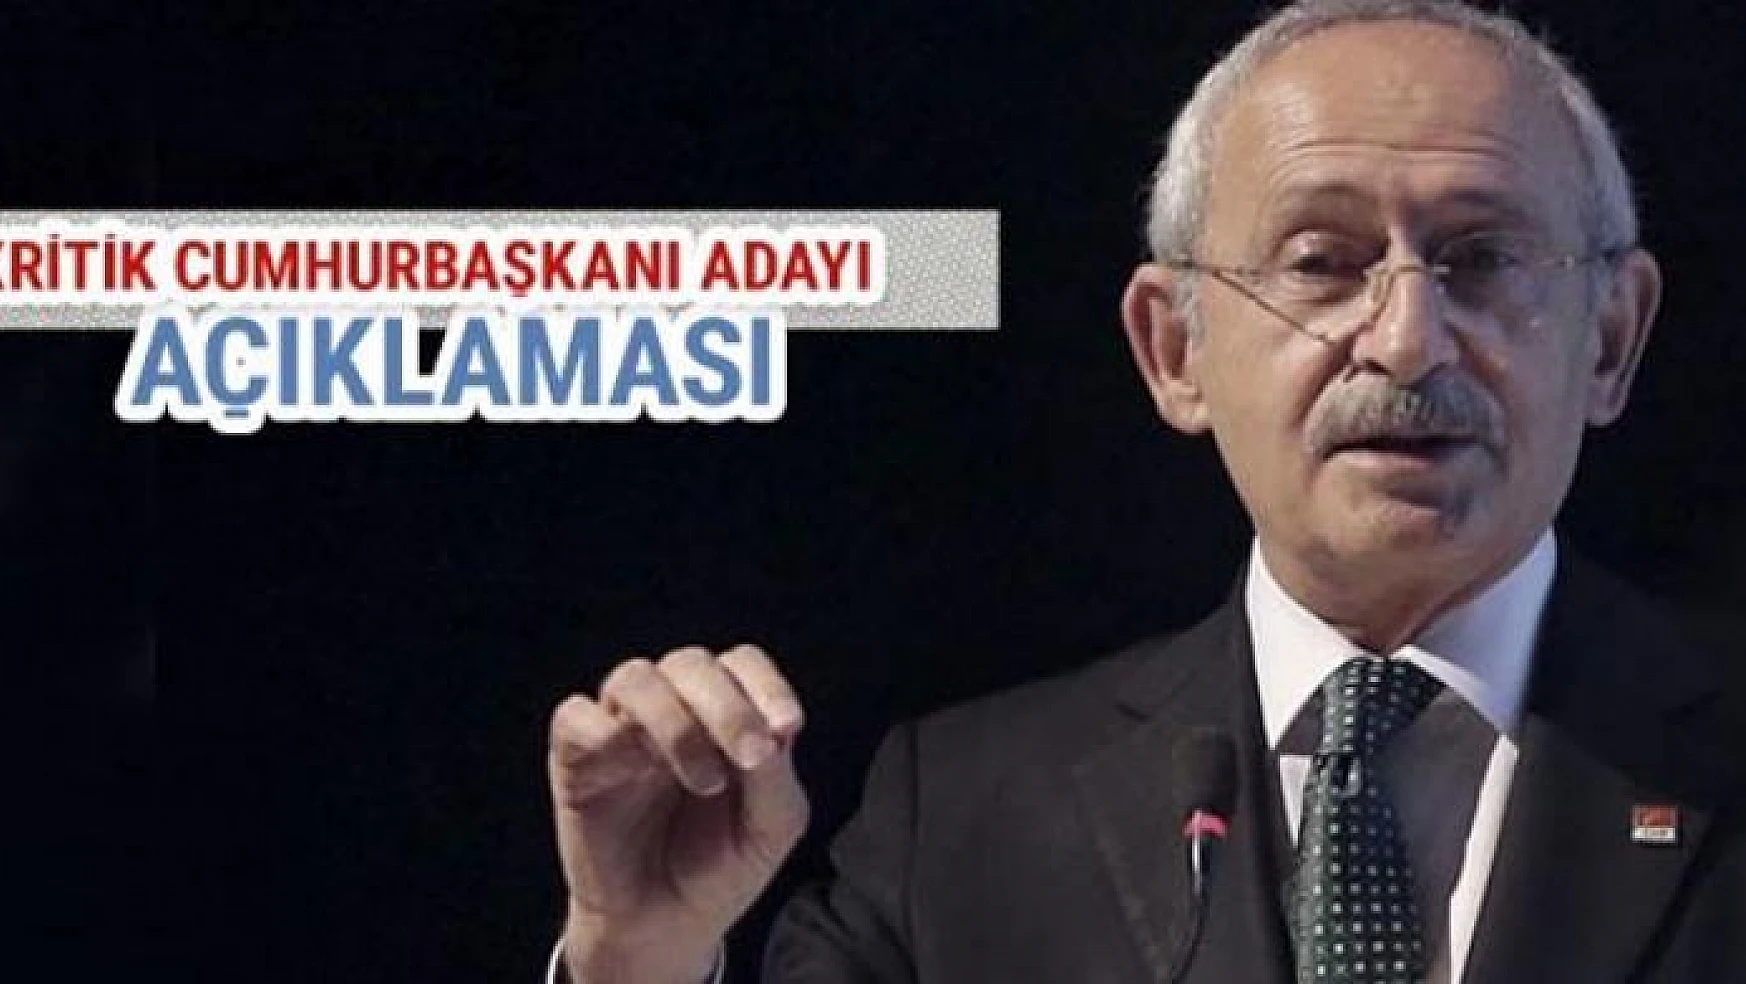 Kılıçdaroğlu'dan kritik cumhurbaşkanı adaylığı açıklaması